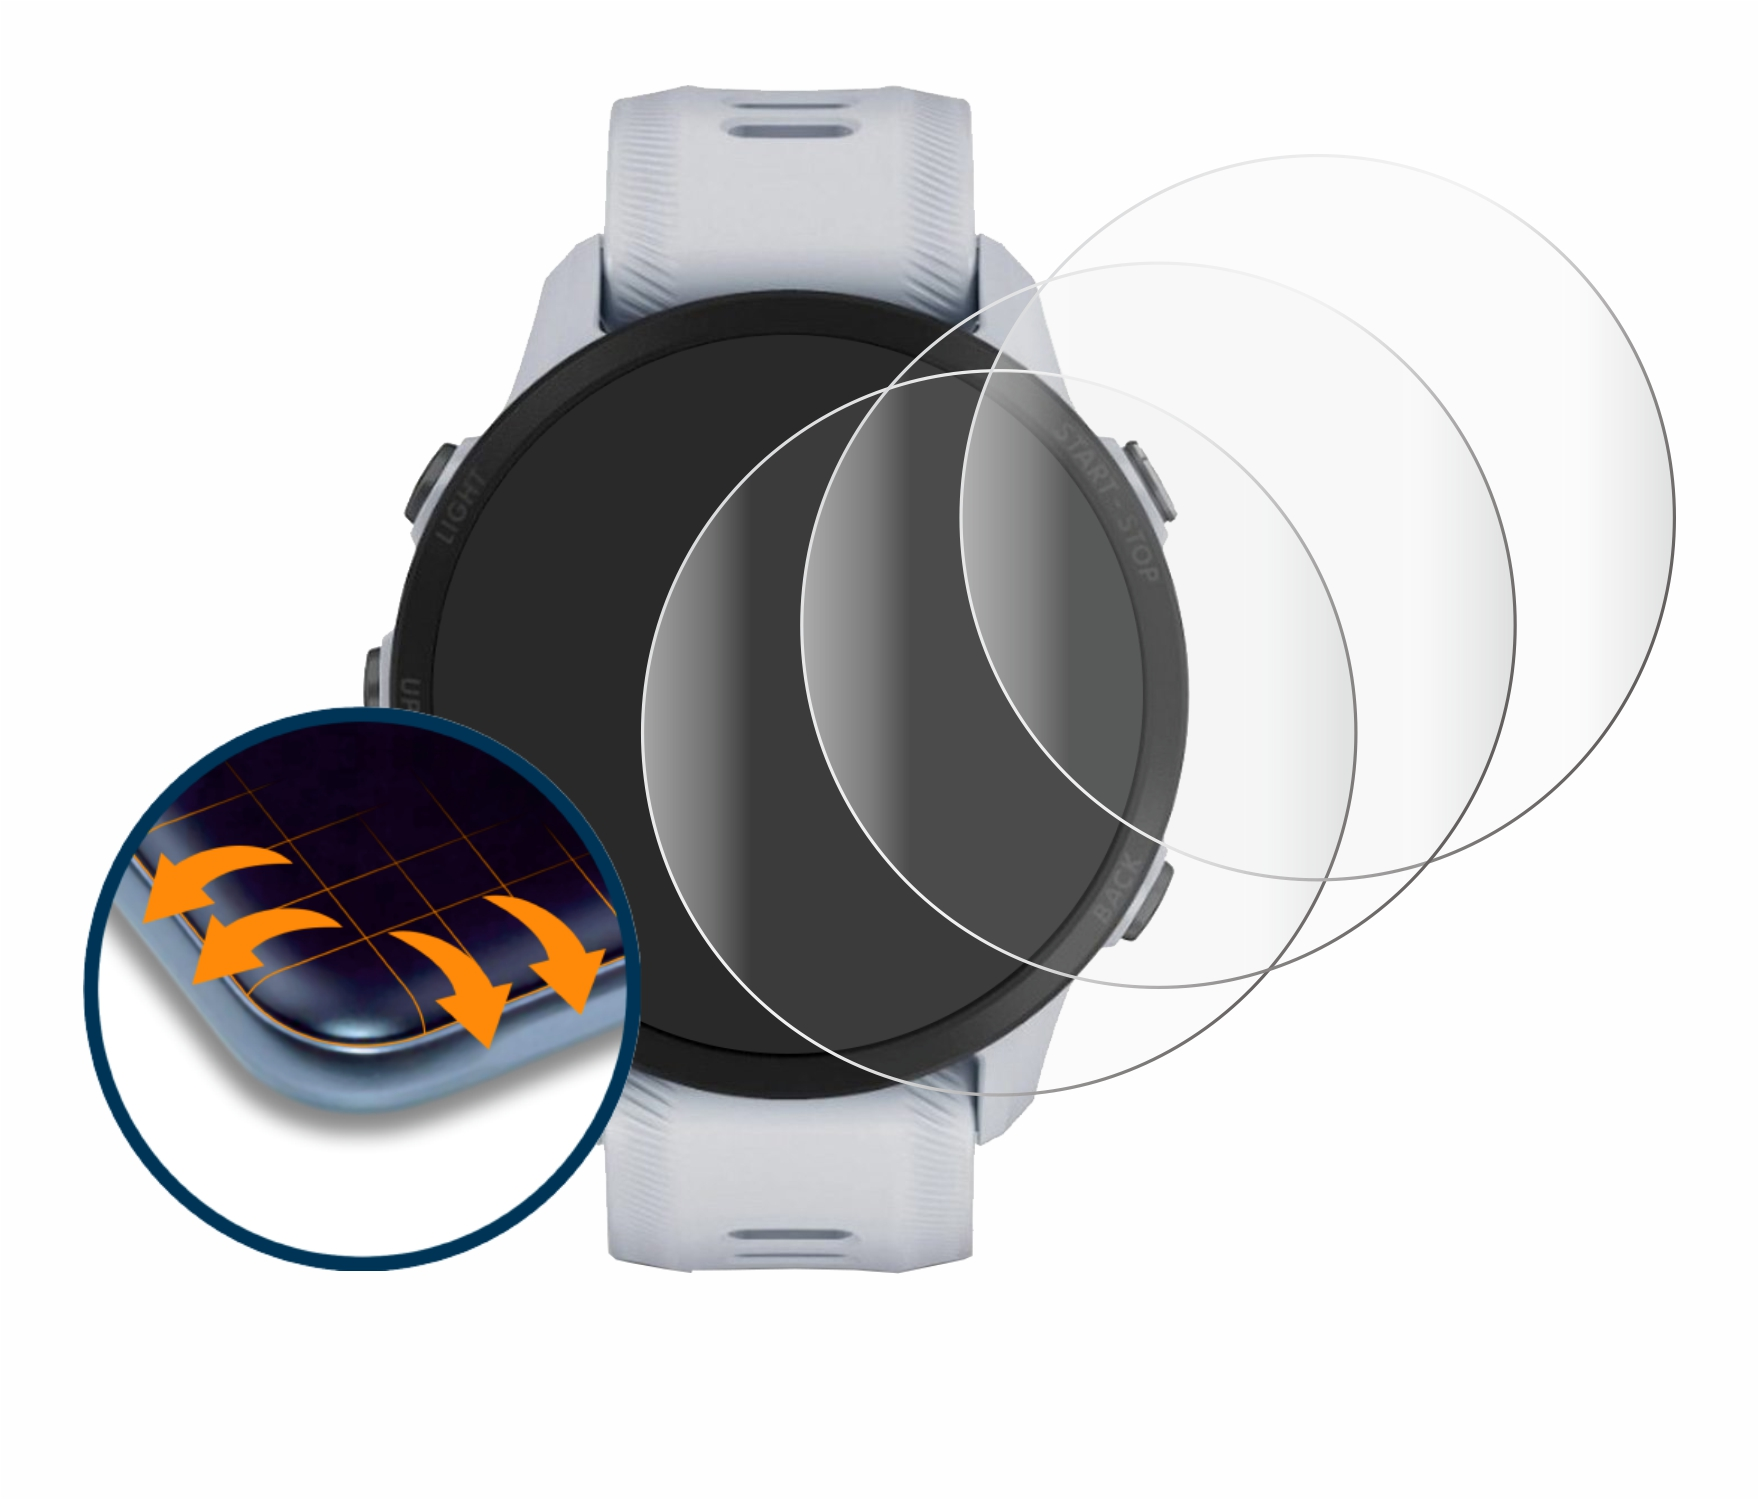 SAVVIES 4x 955) Flex Full-Cover Schutzfolie(für Forerunner Garmin Curved 3D